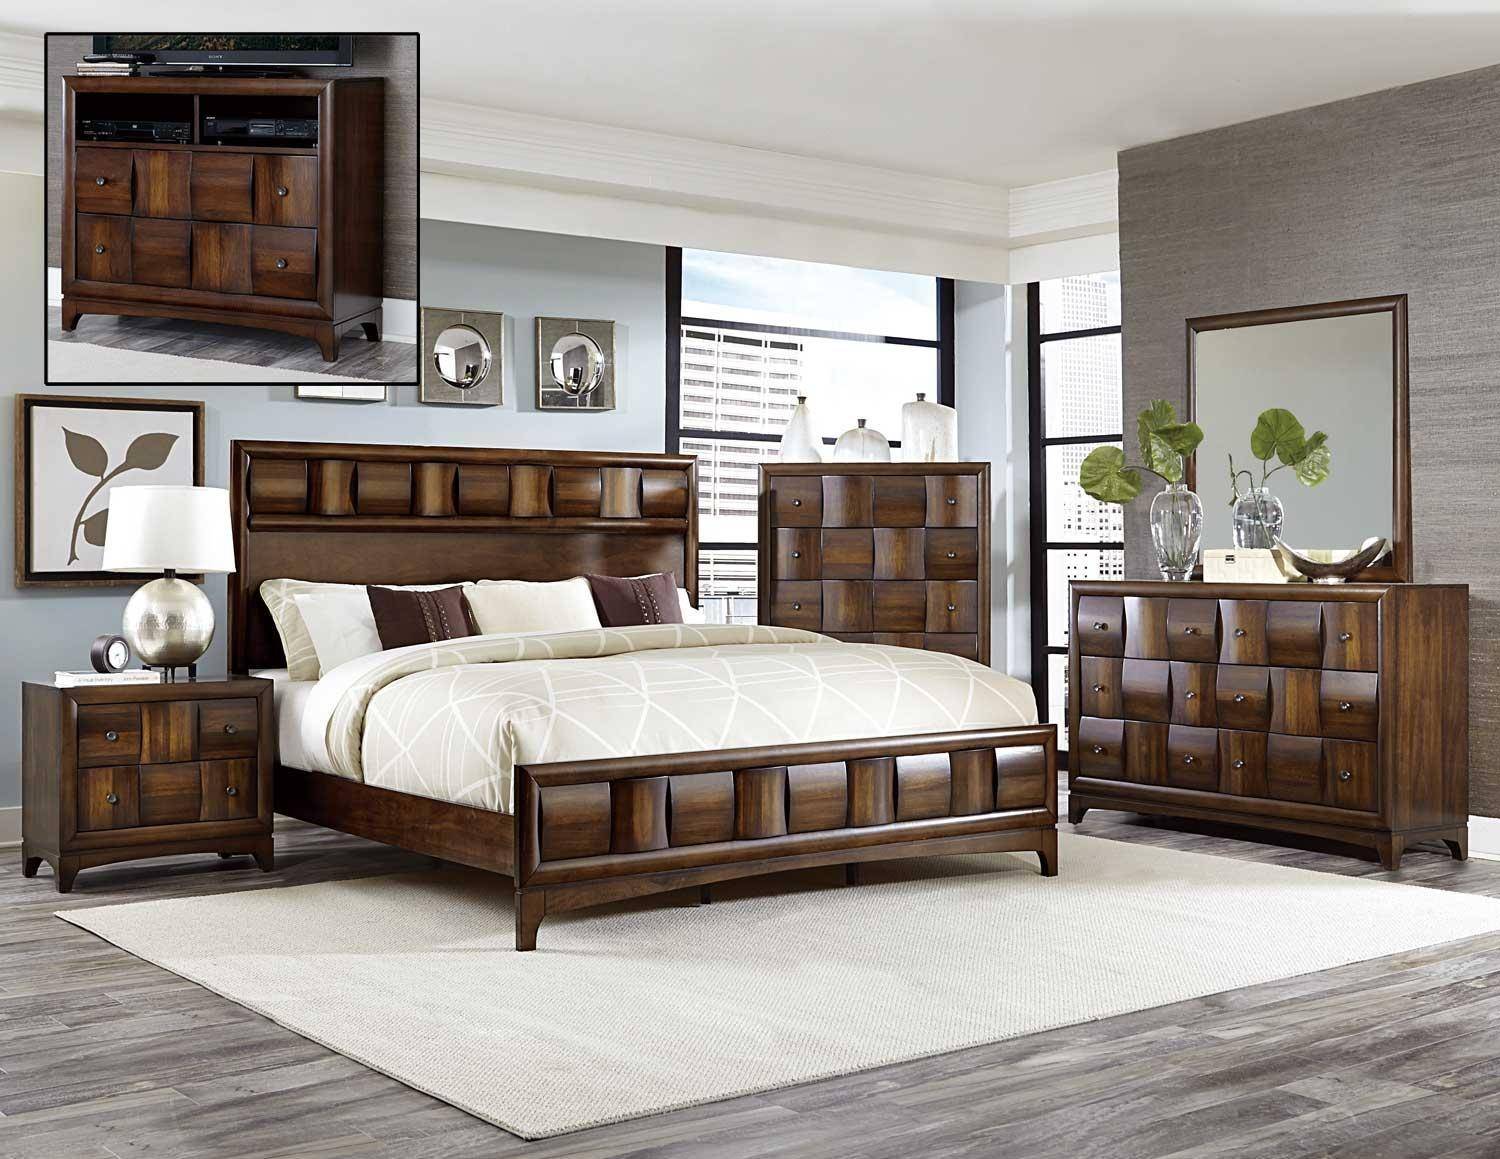 buy bedroom furniture online nz